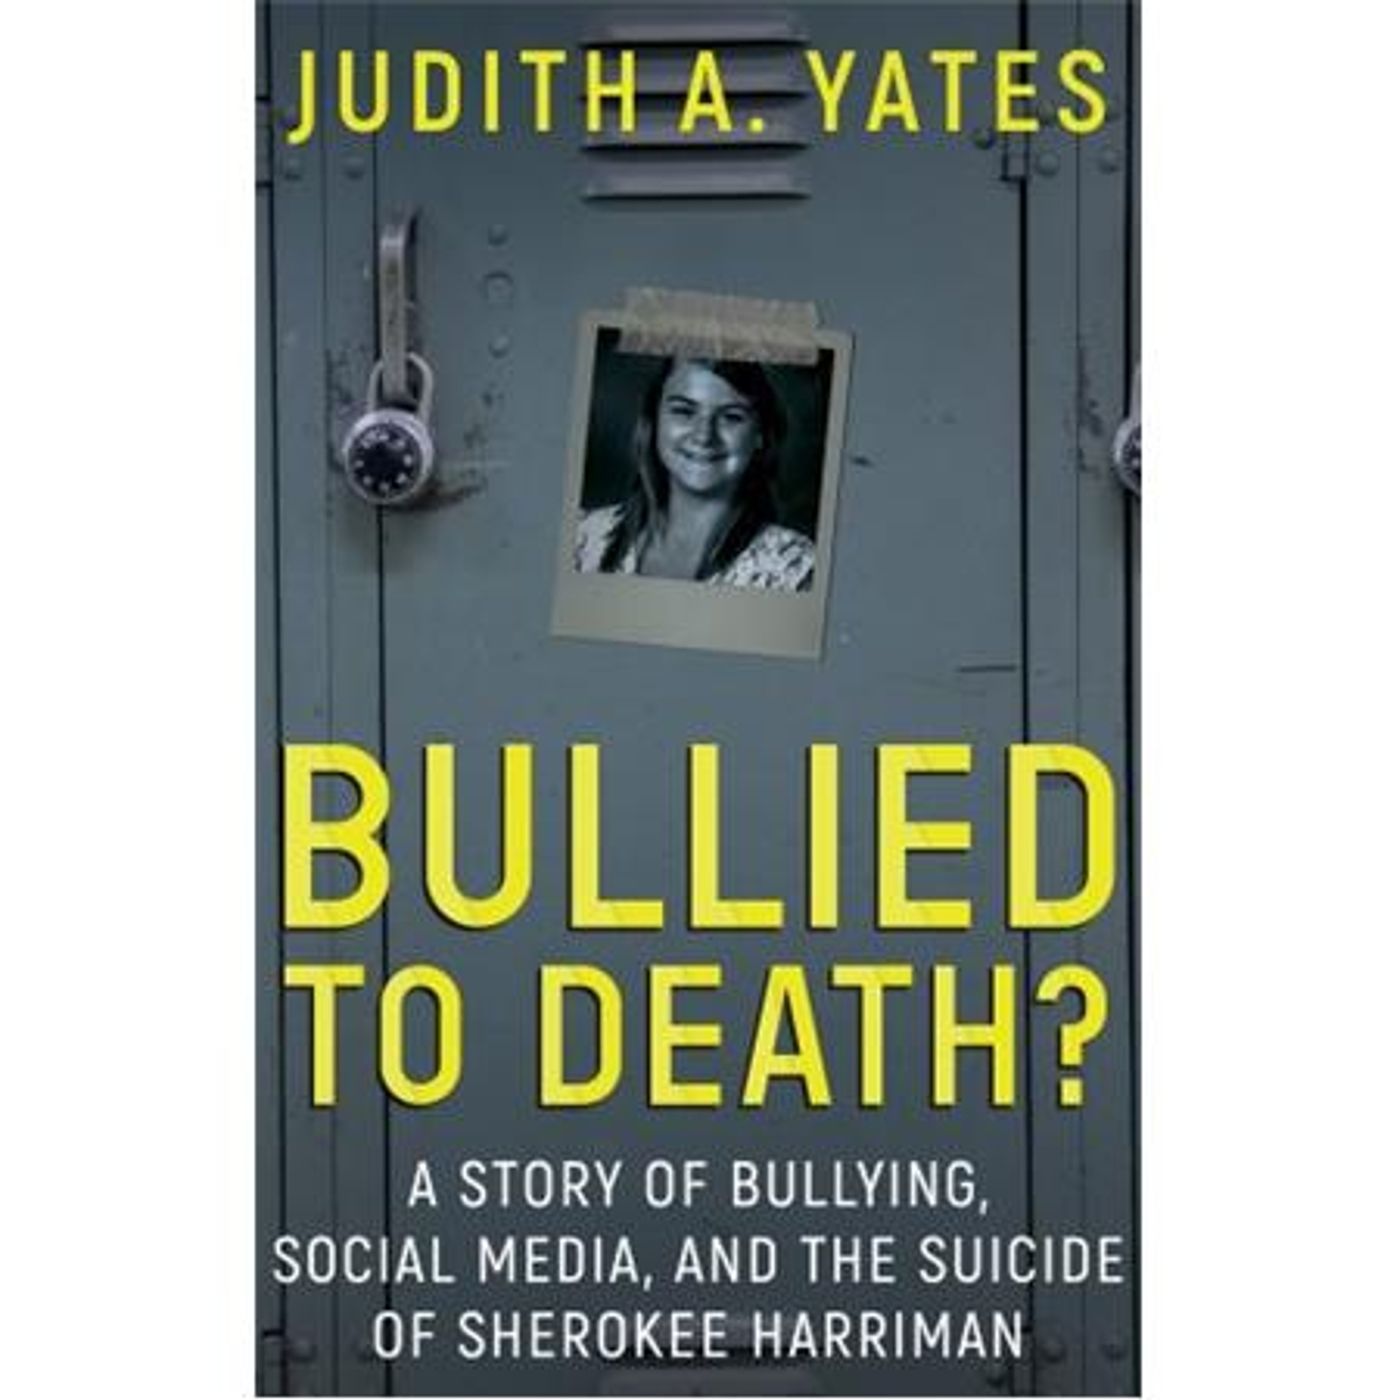 BULLIED TO DEATH-Judith A. Yates